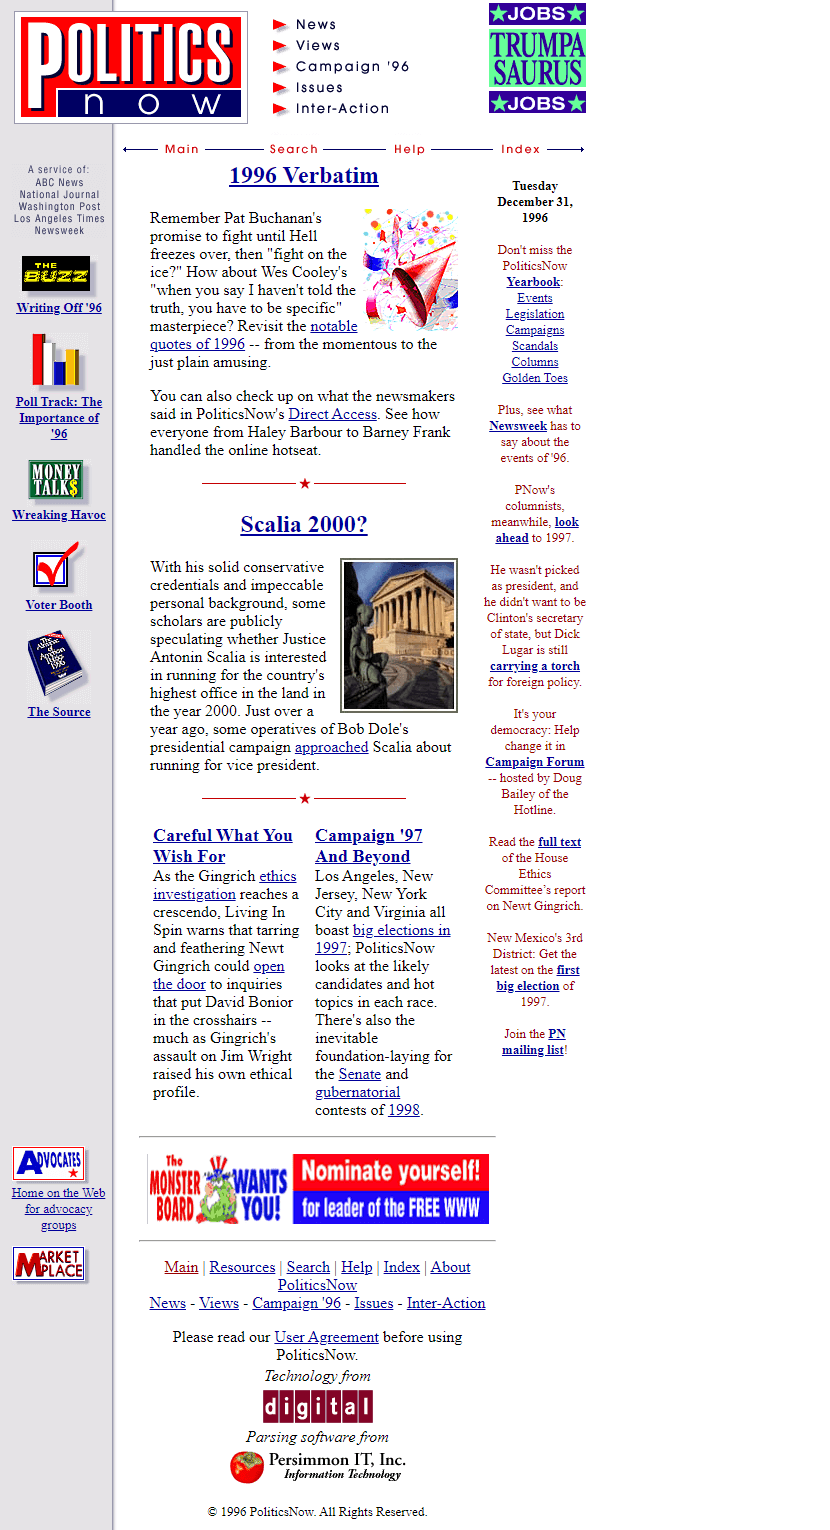 PoliticsNow in 1996